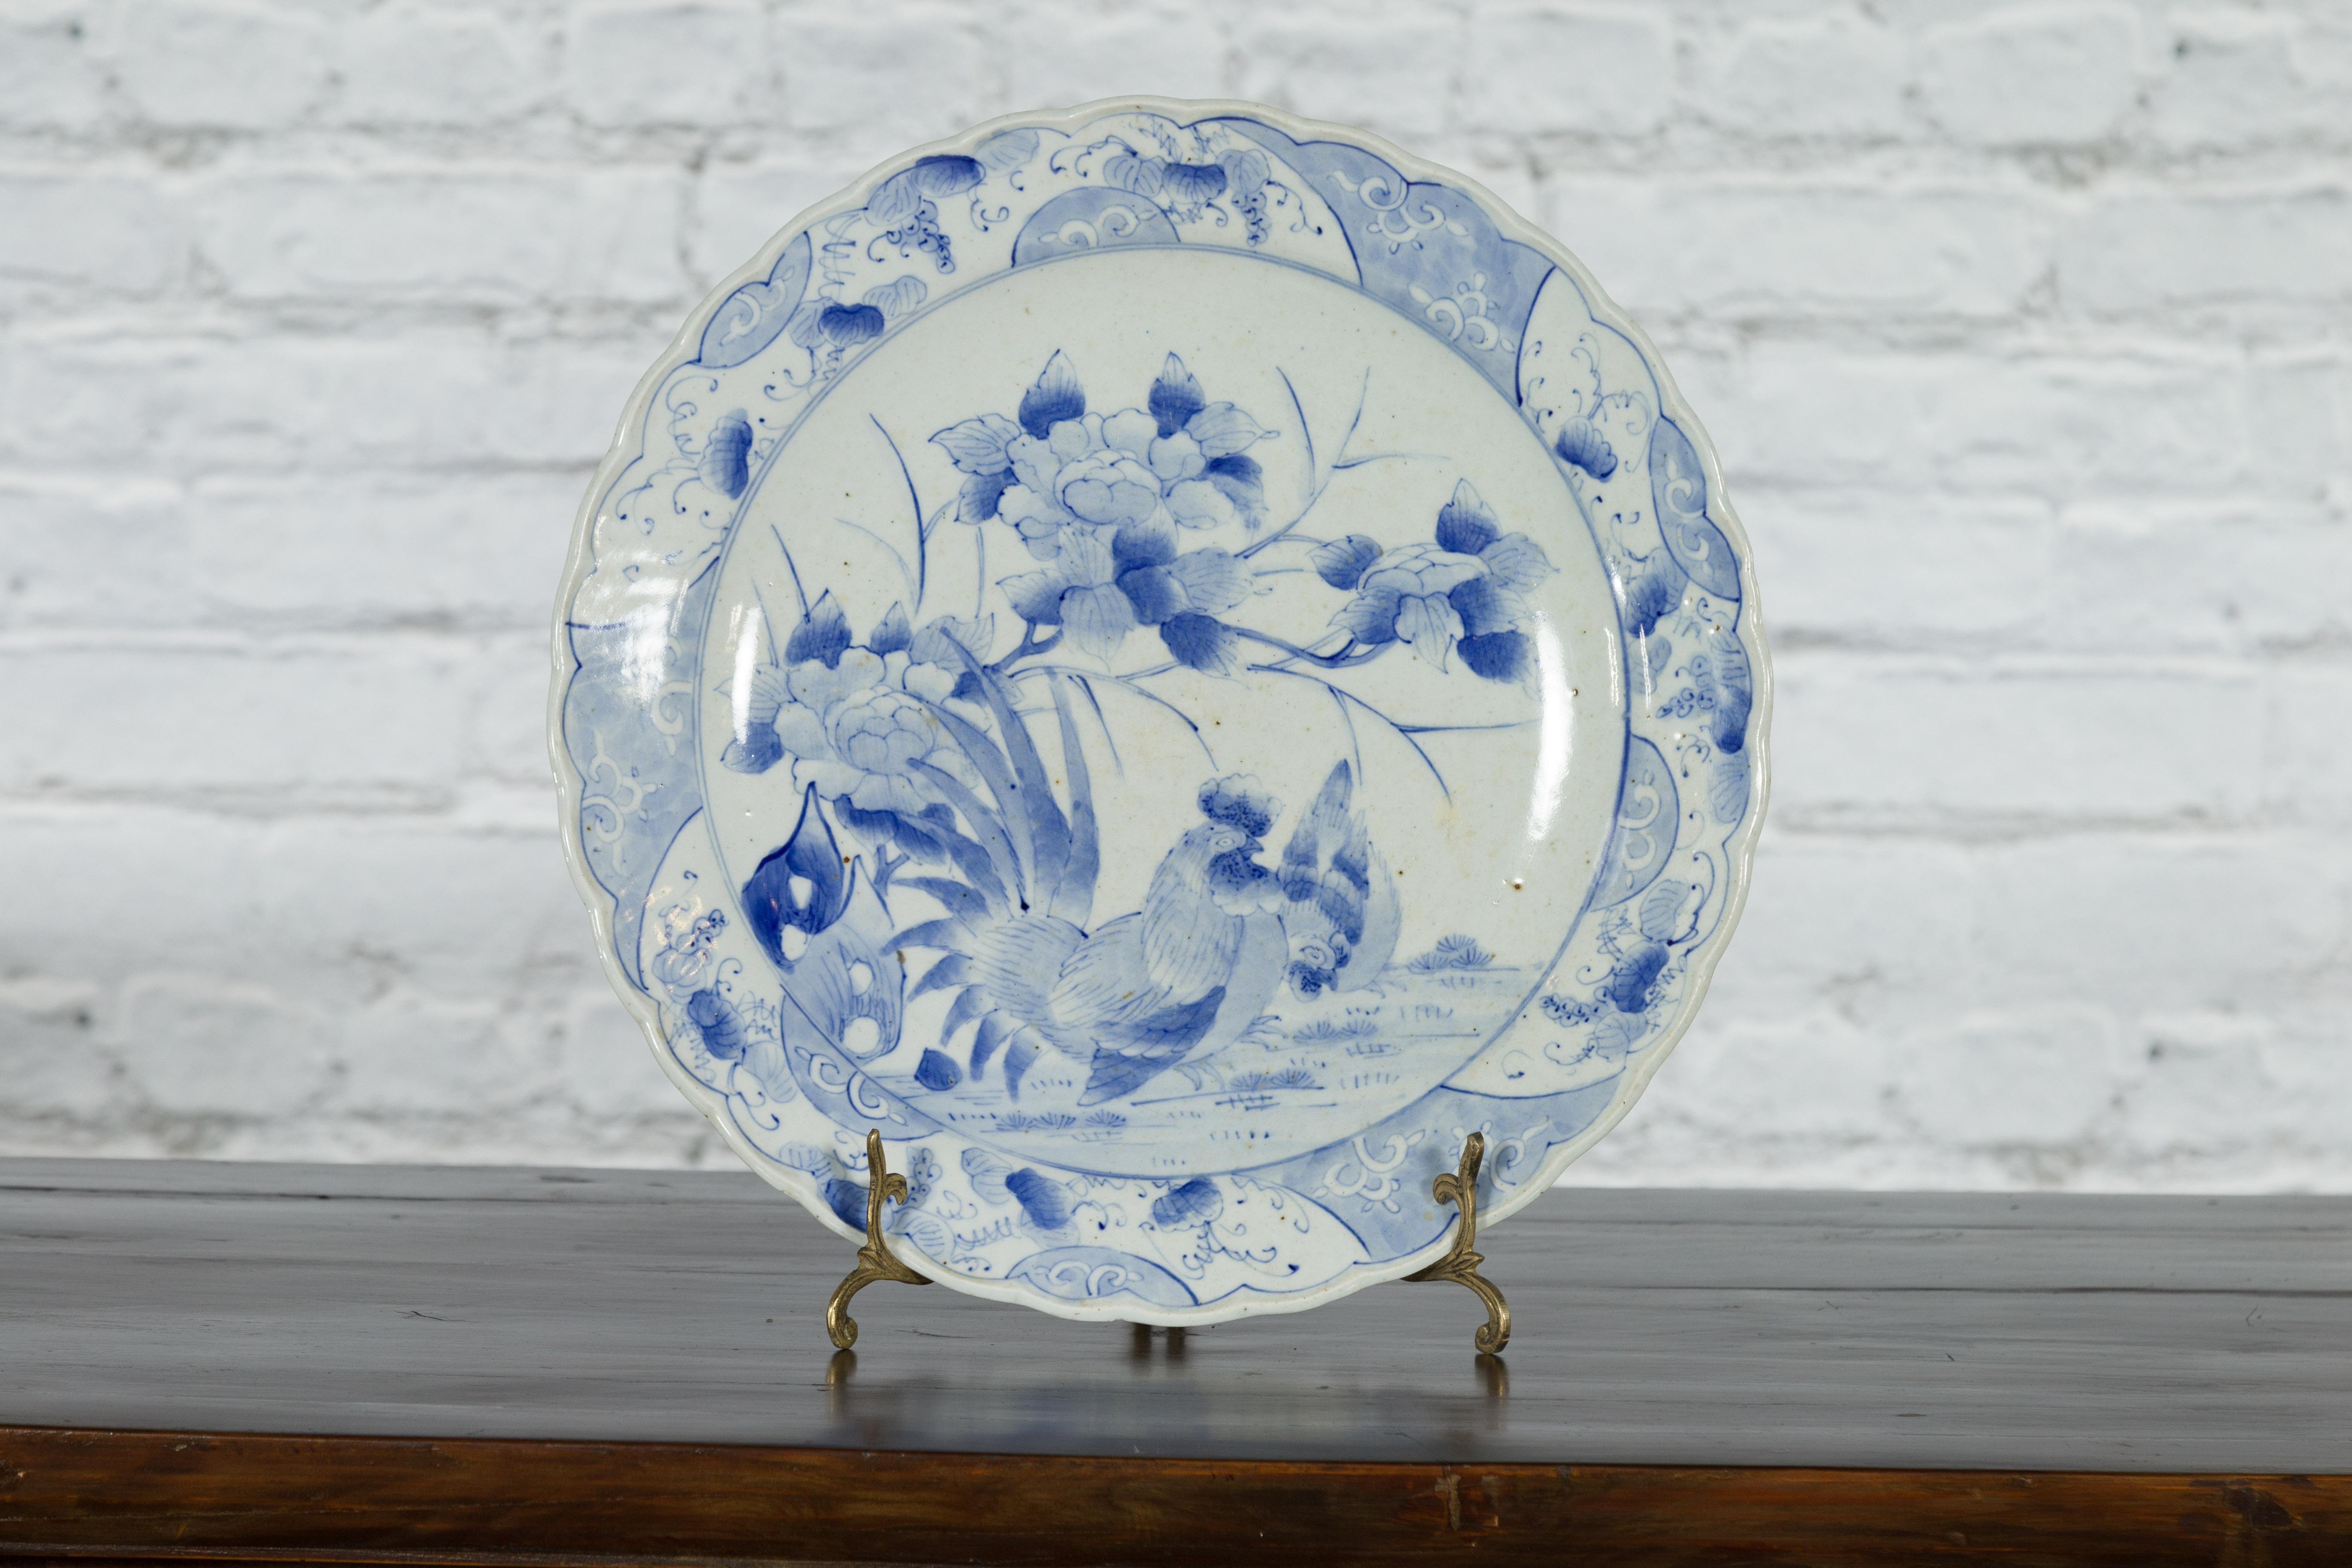 Assiette en porcelaine japonaise du XIXe siècle, à décor floral bleu et blanc peint à la main avec un coq et une poule. Créée au Japon au cours du XIXe siècle, cette assiette en porcelaine présente un délicat décor bleu et blanc représentant une